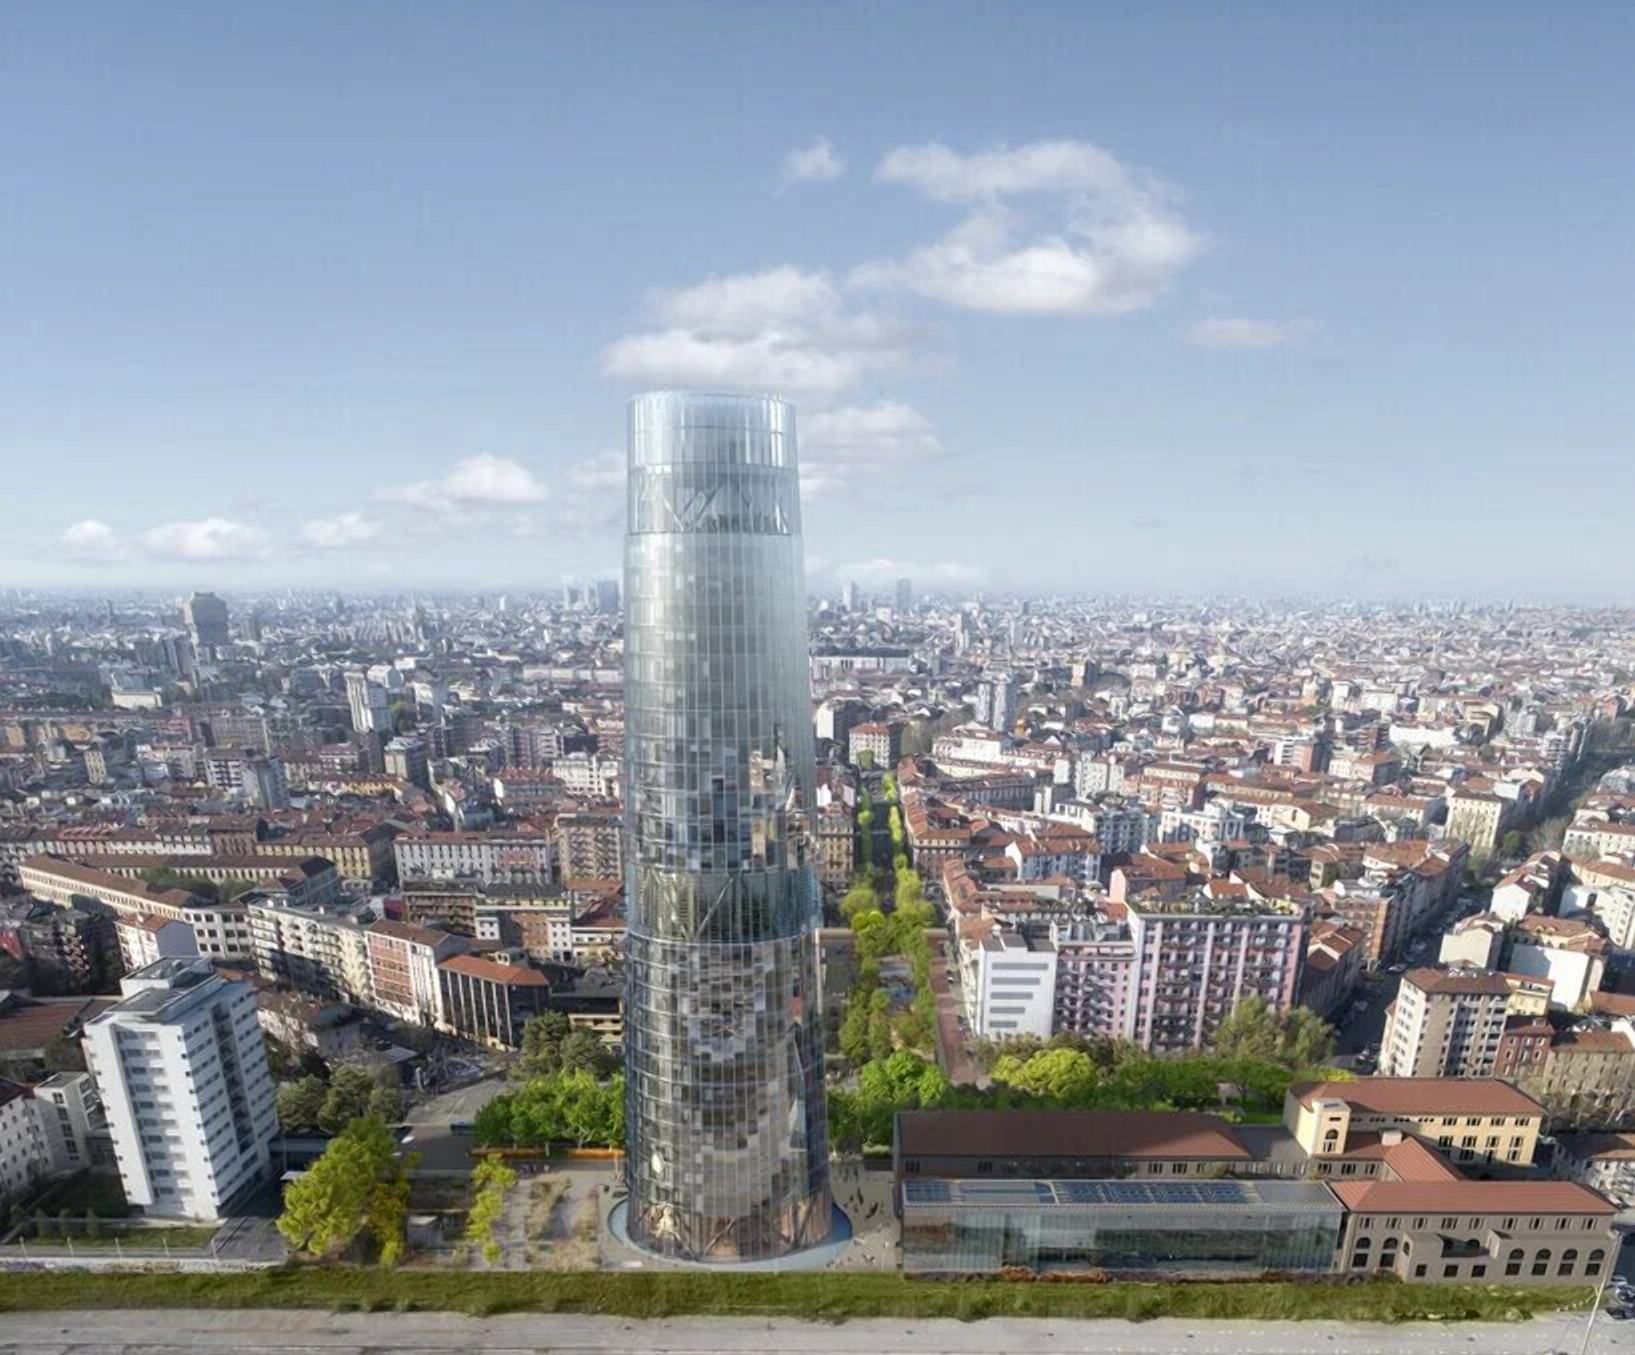 Скляна сучасність: у Мілані "виросте" неймовірна офісна вежа - 5 августа 2021 - Дизайн 24